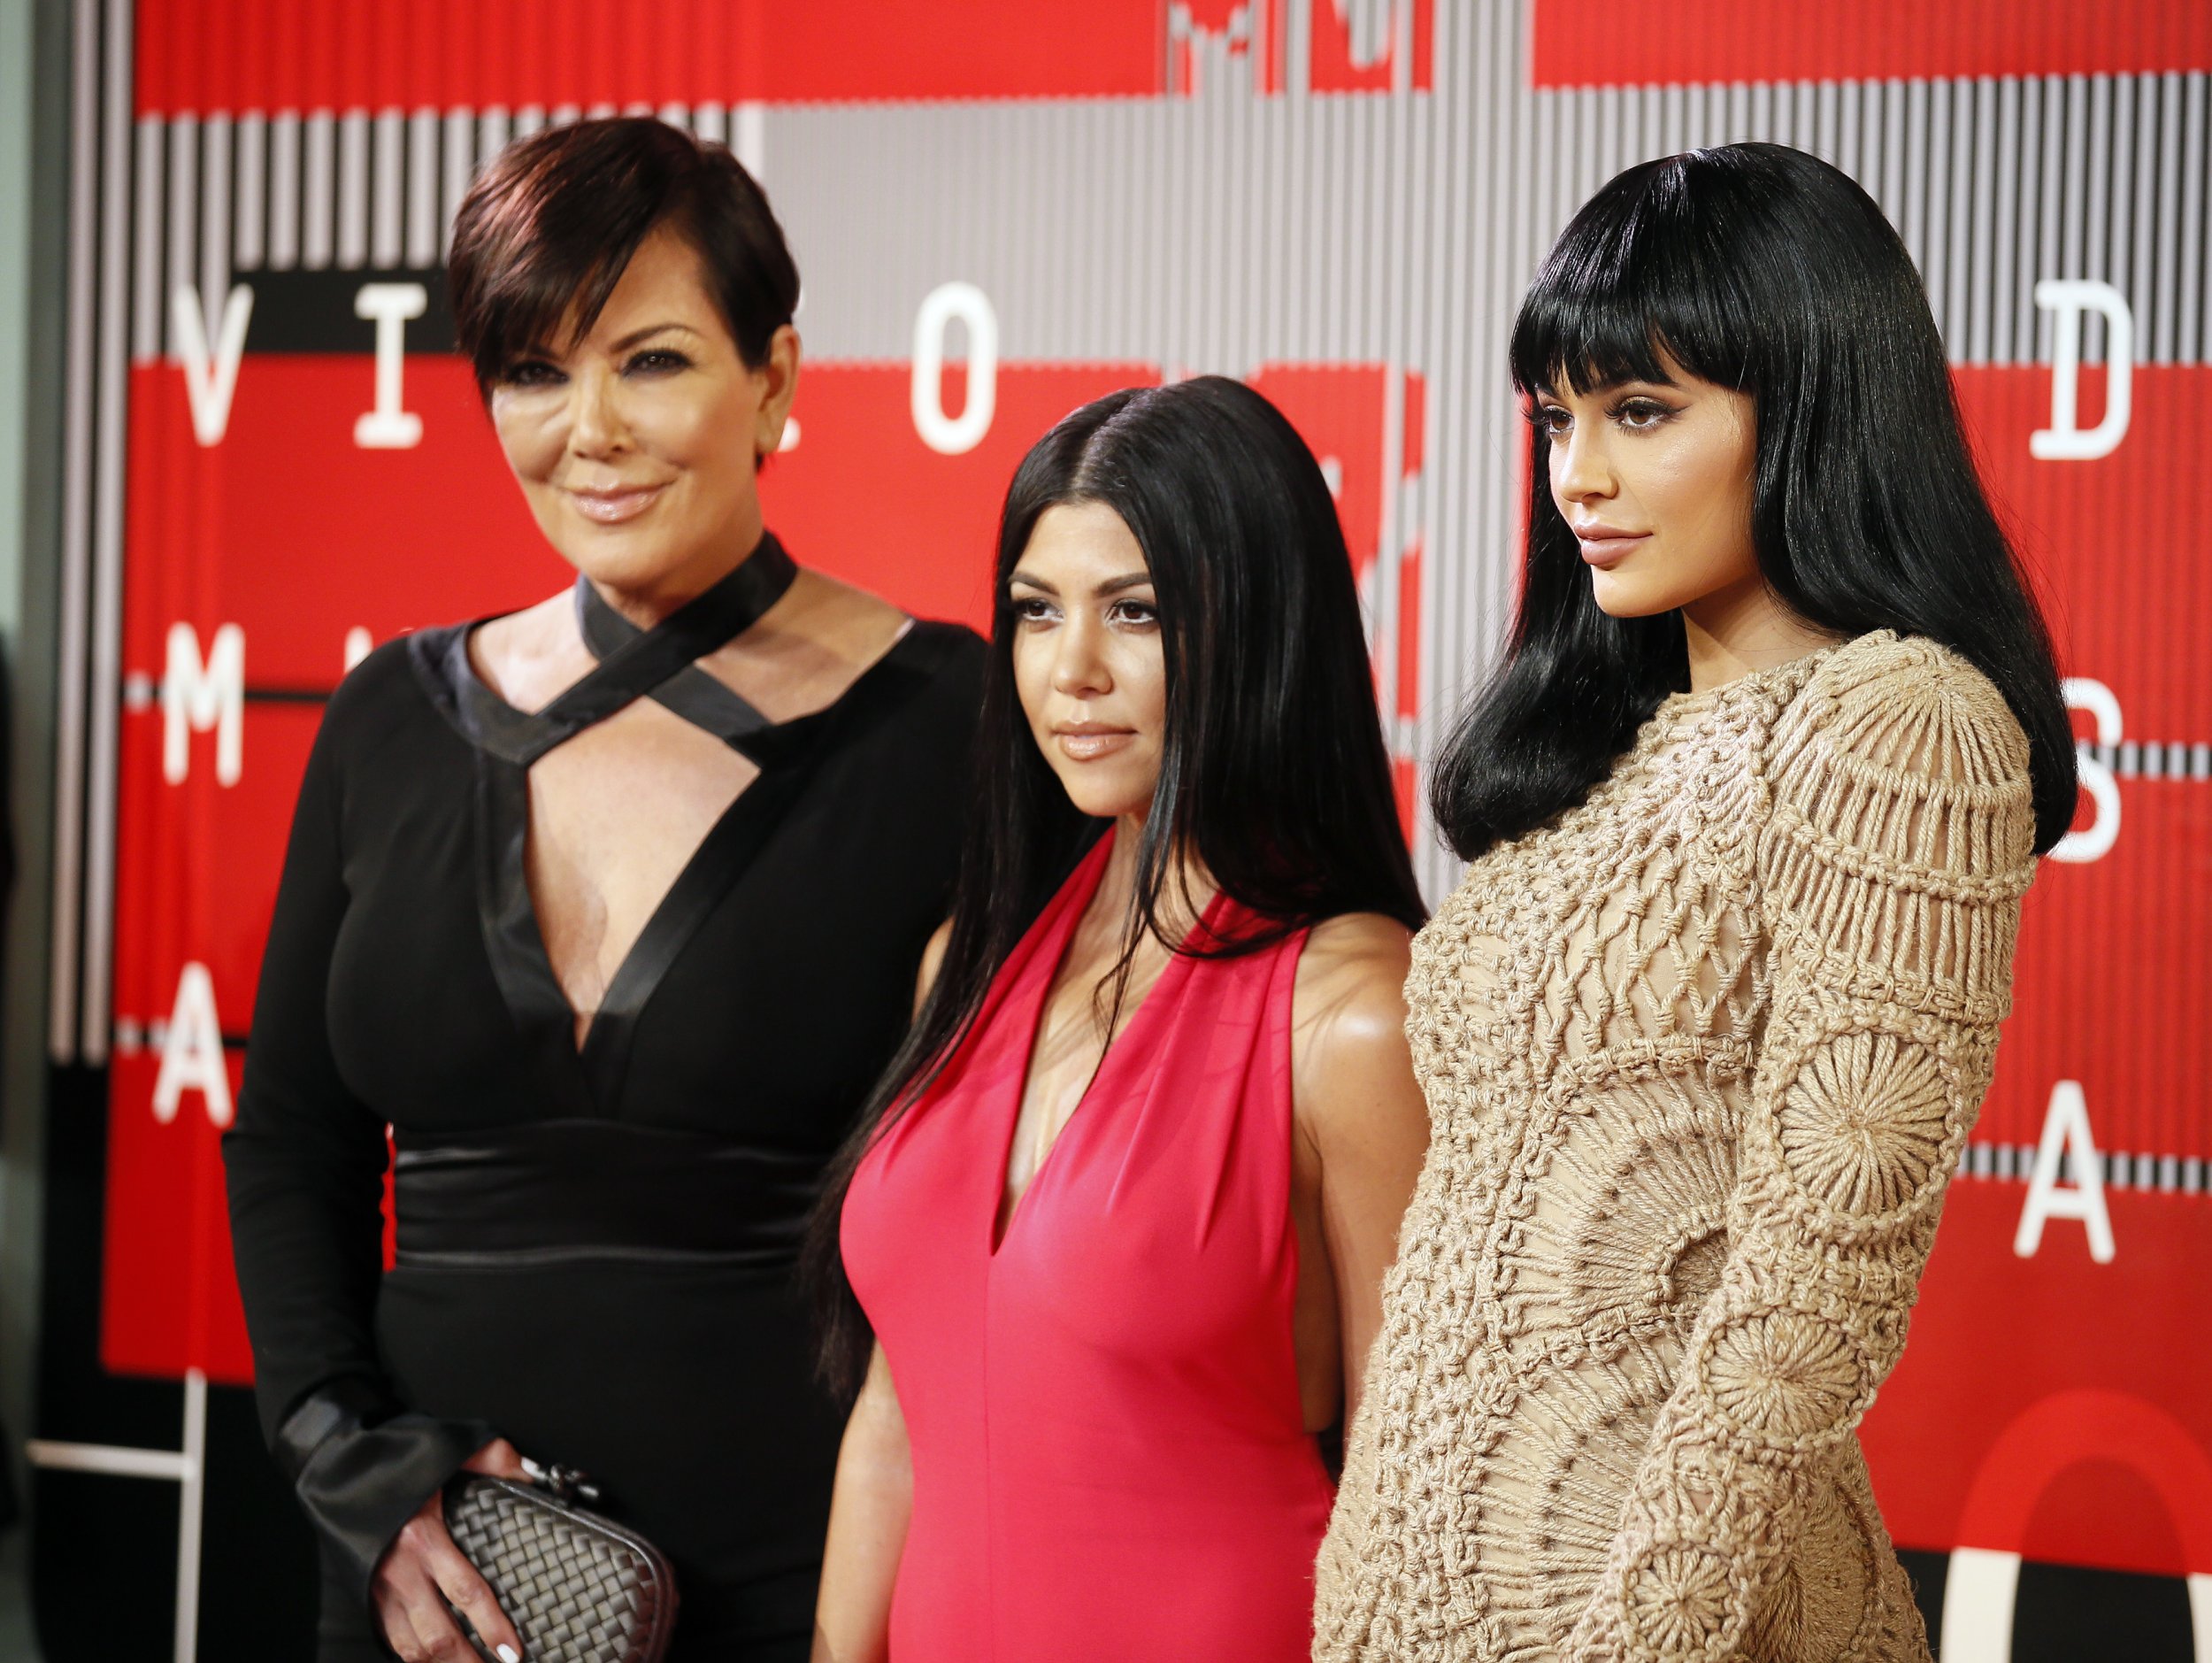 Kris Jenner, Kourtney Kardashian and Kylie Jenner